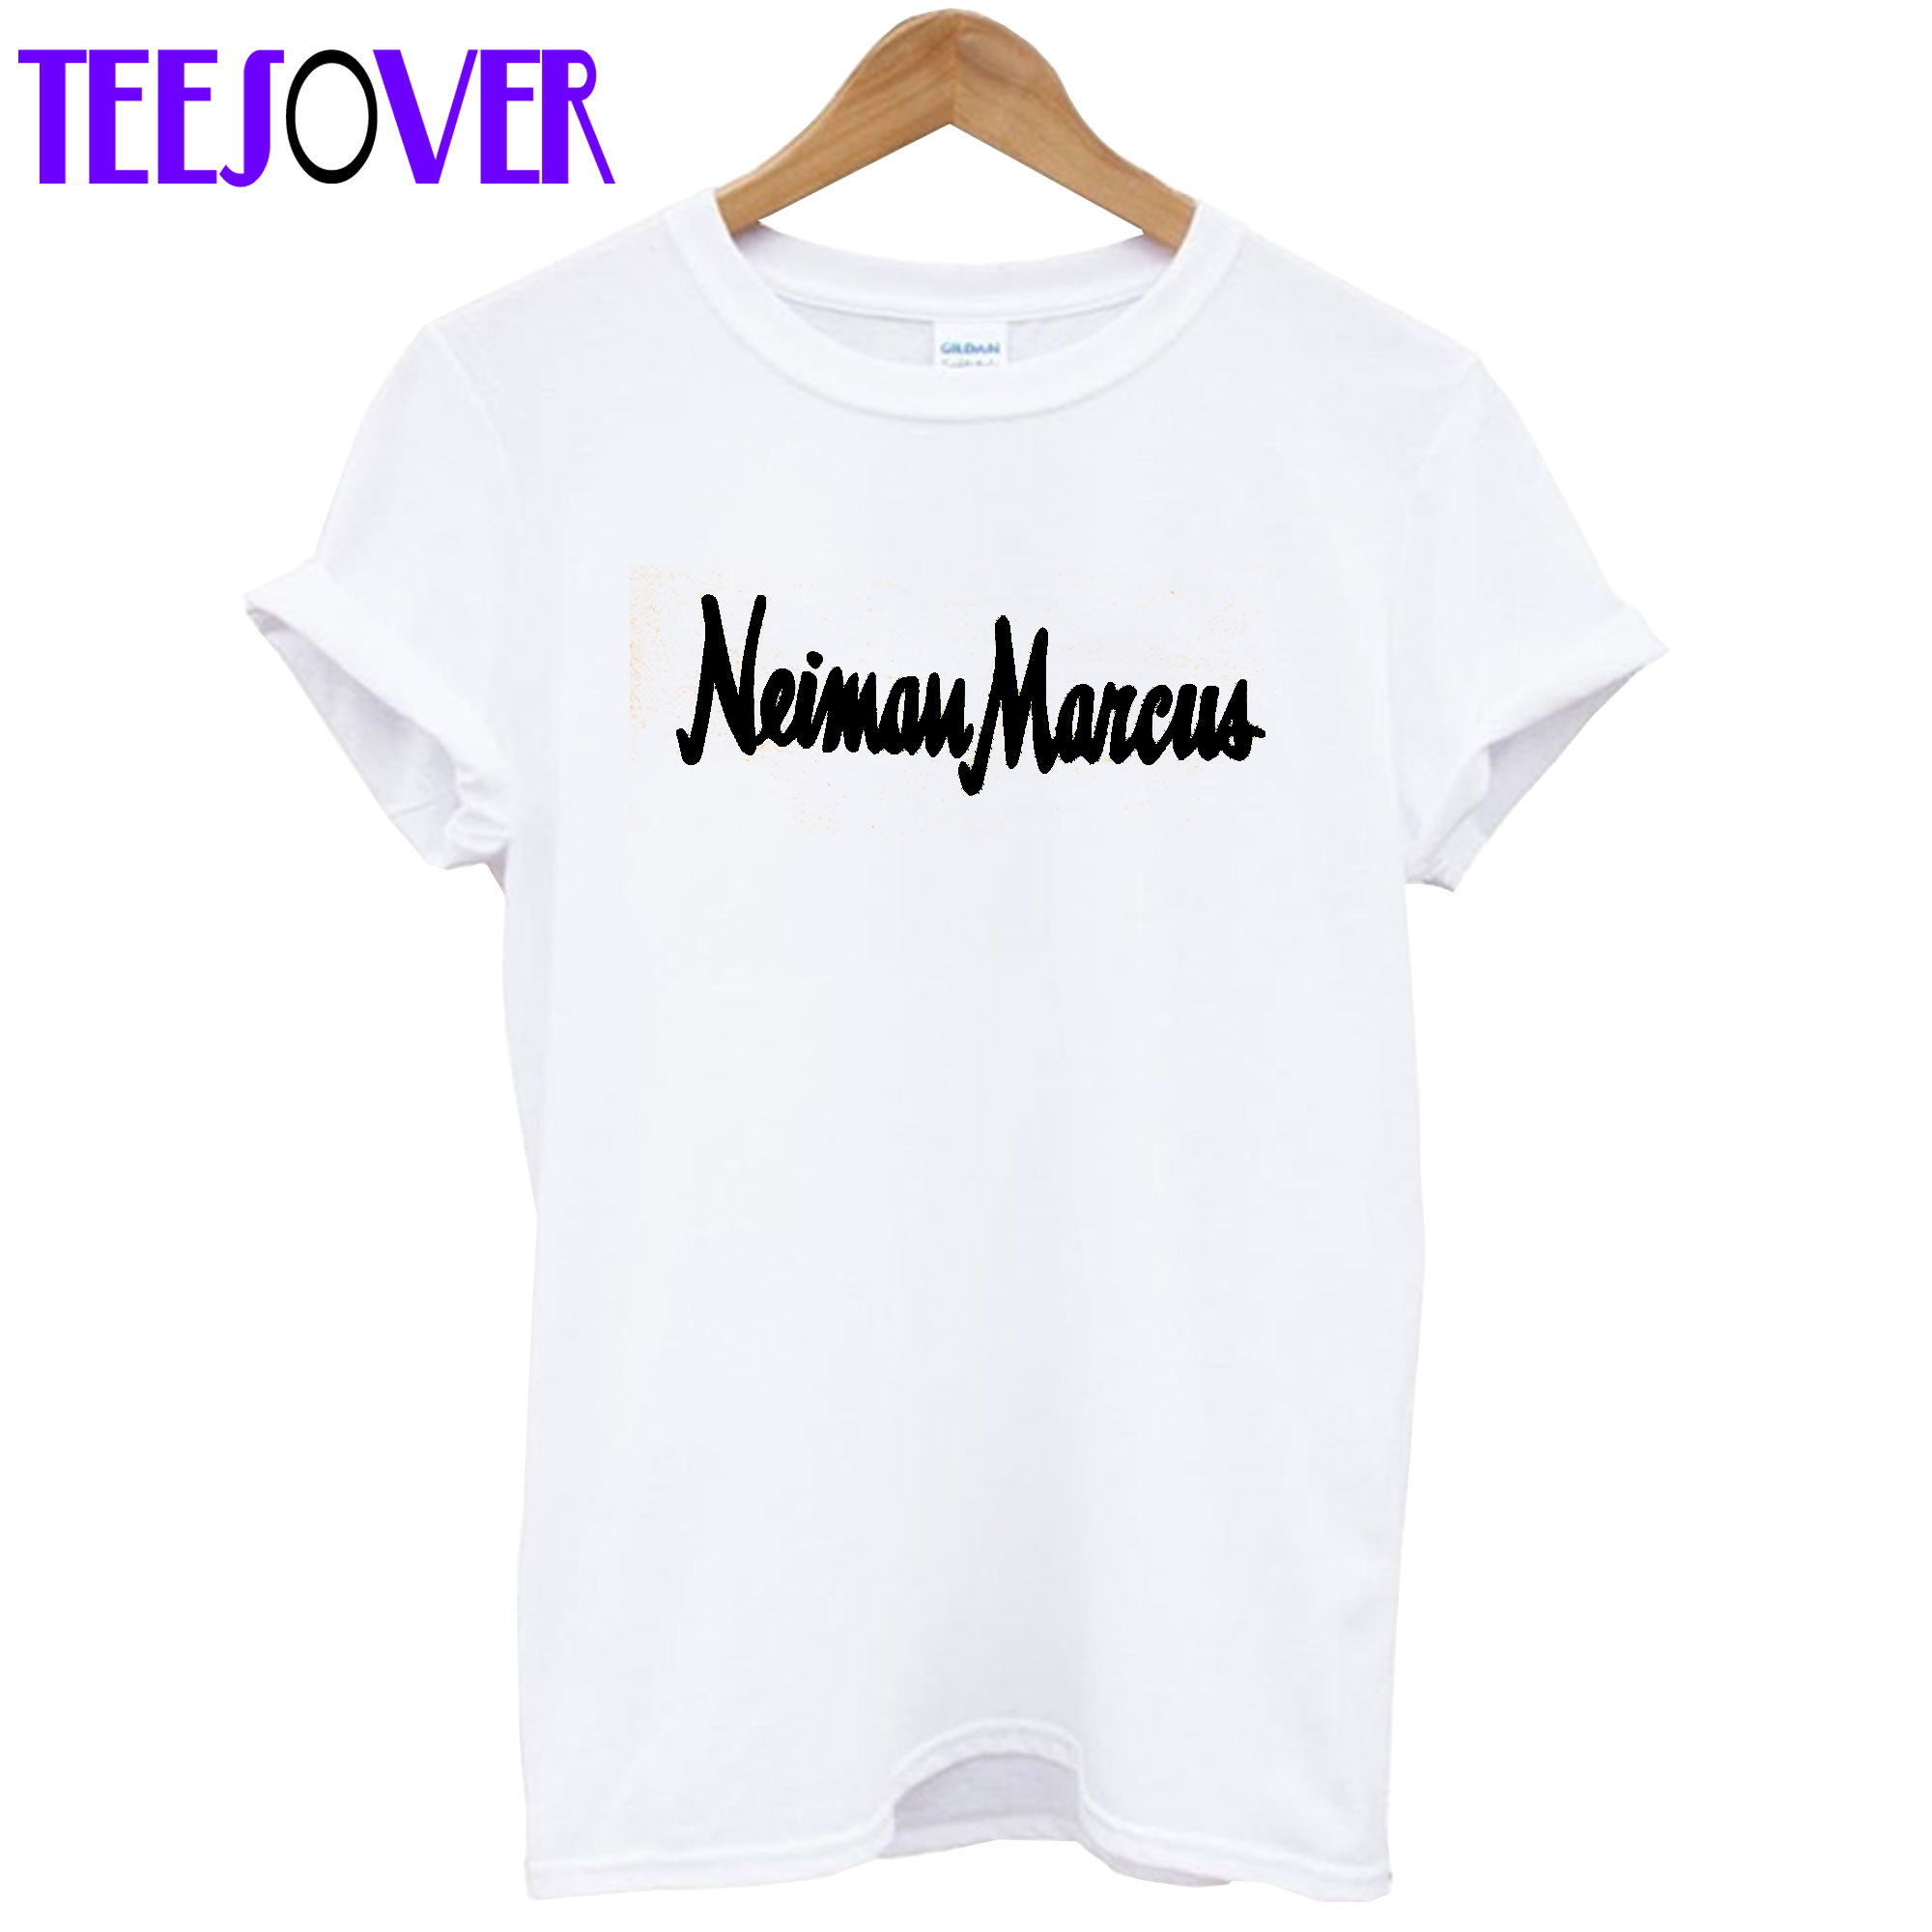 Neiman Marcus T Shirt